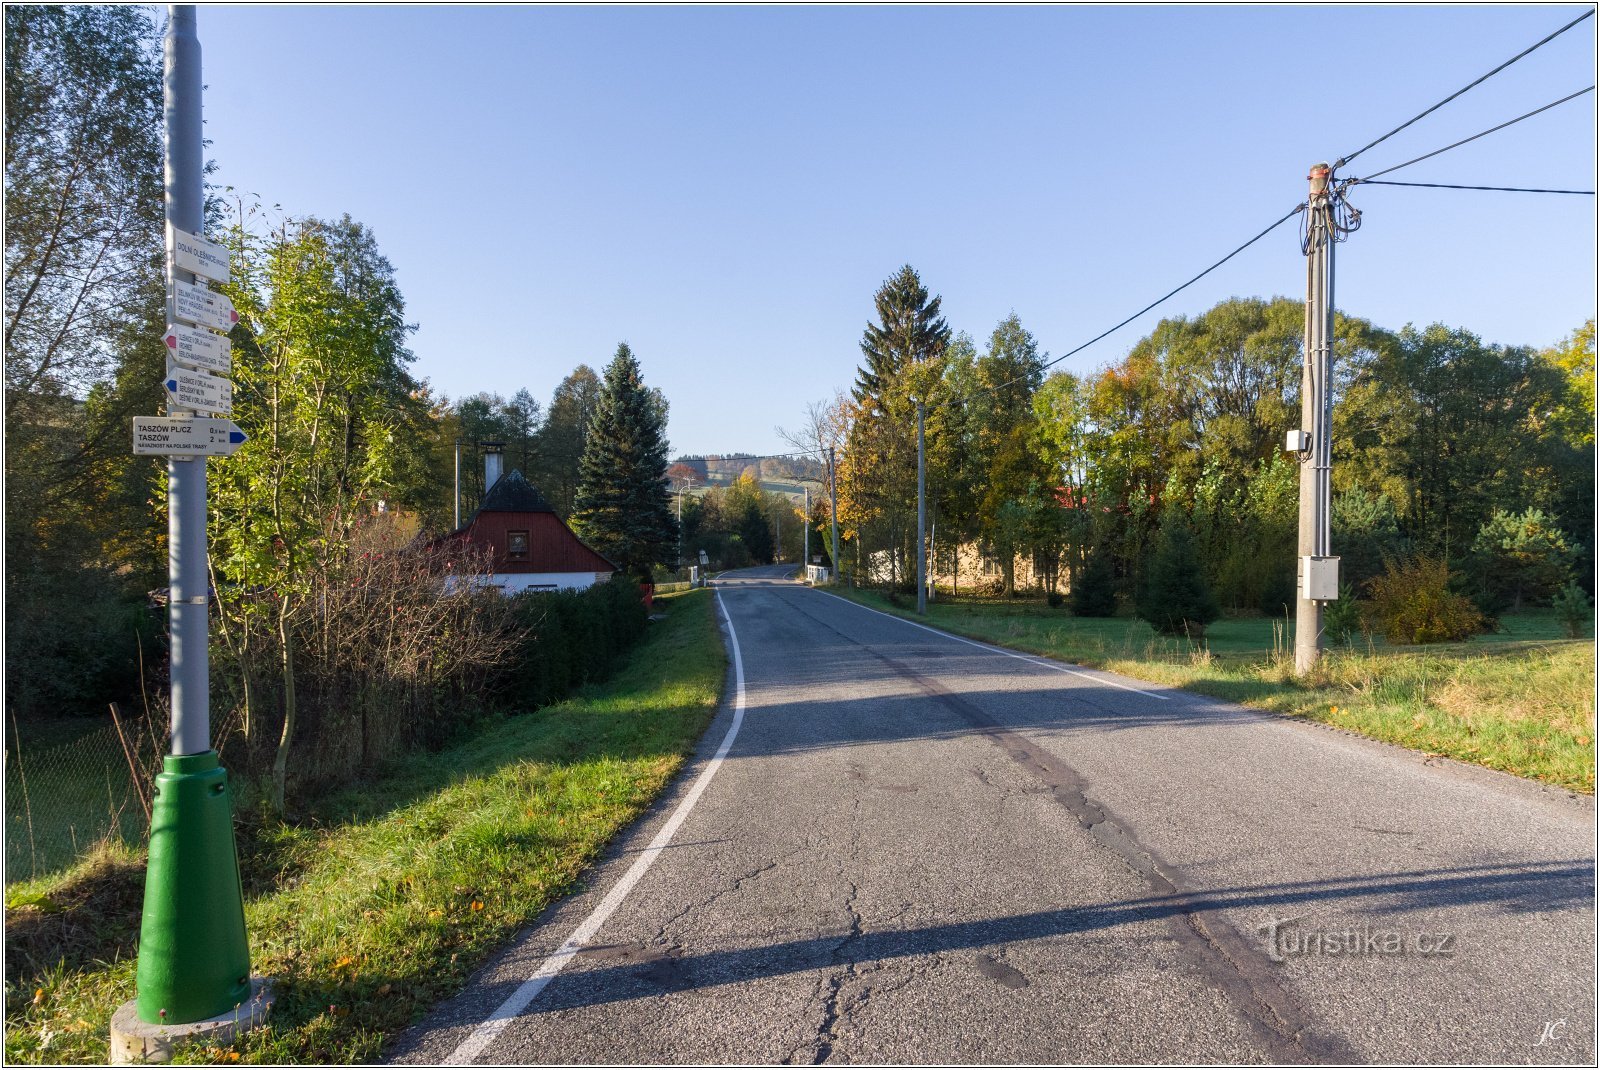 3-Dolní Olešnice, crossroads, road to Dobruška